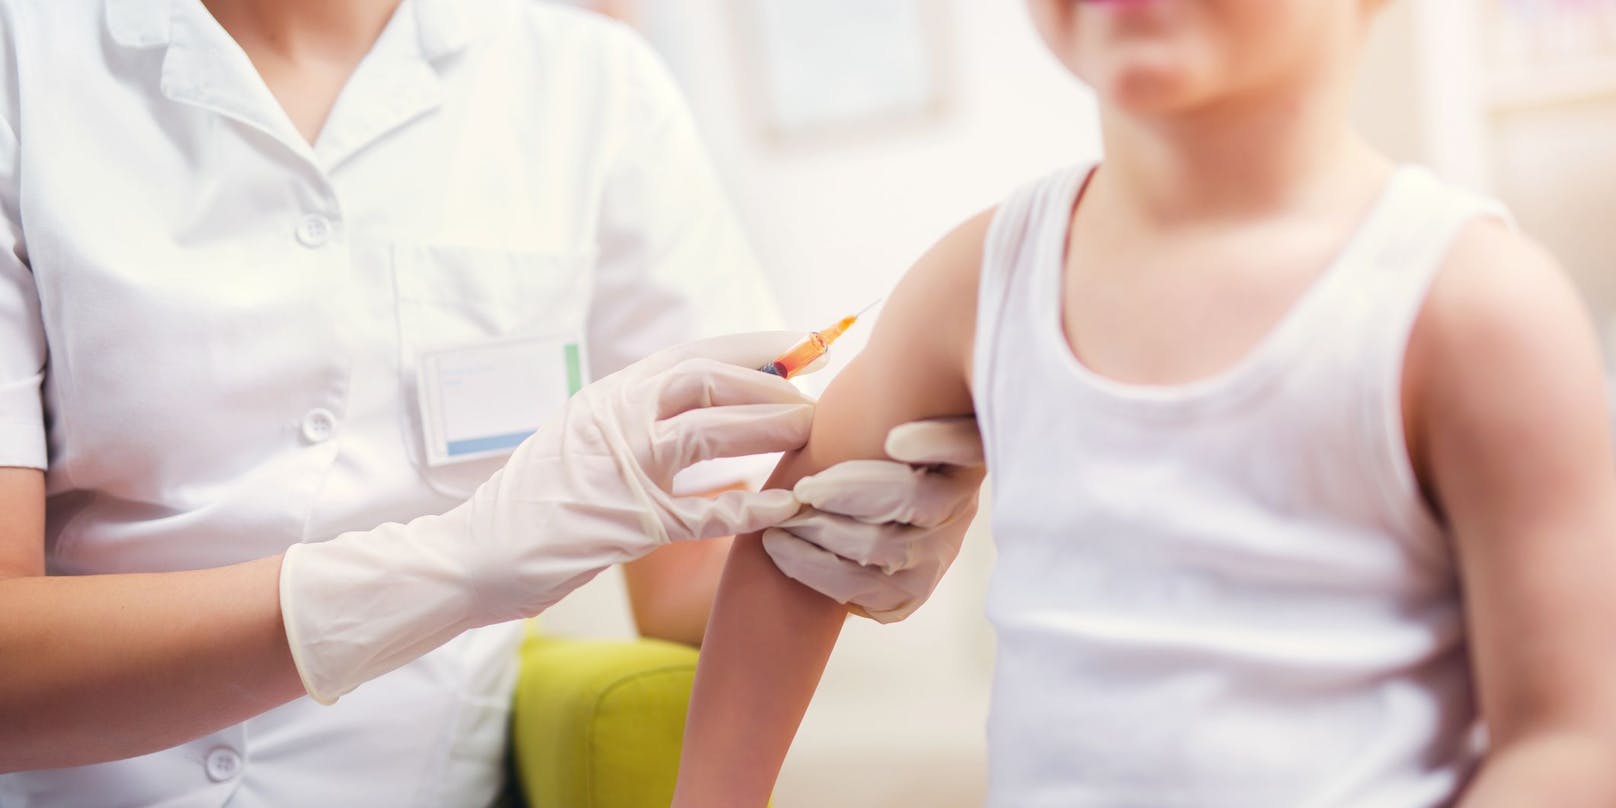 33 Kinder bekamen irrtümlich einen HPV-Impfstoff verabreicht.